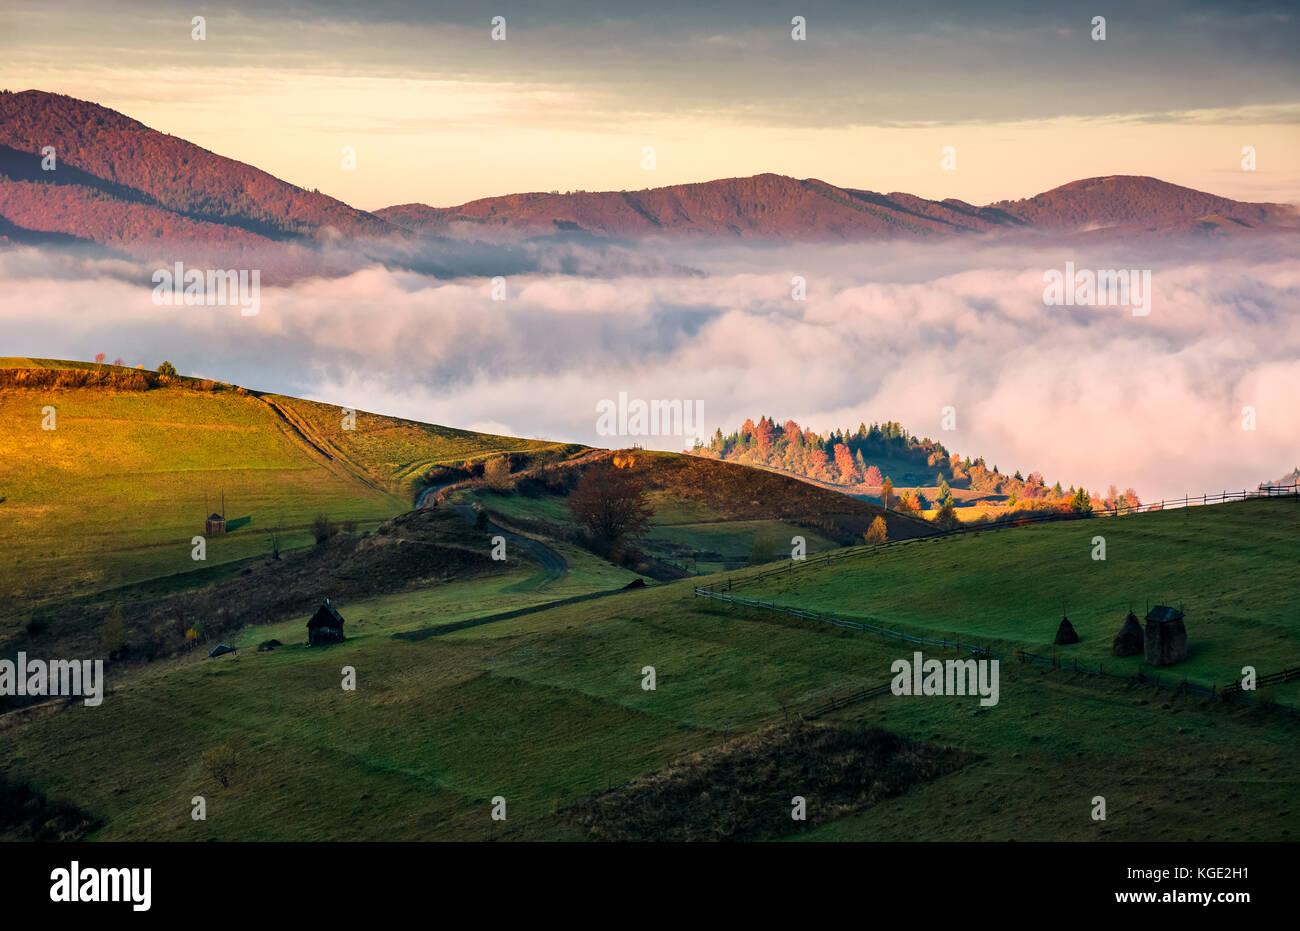 Ladera de hierba por encima de la espesa niebla en las montañas. hermoso amanecer en el paisaje rural Foto de stock